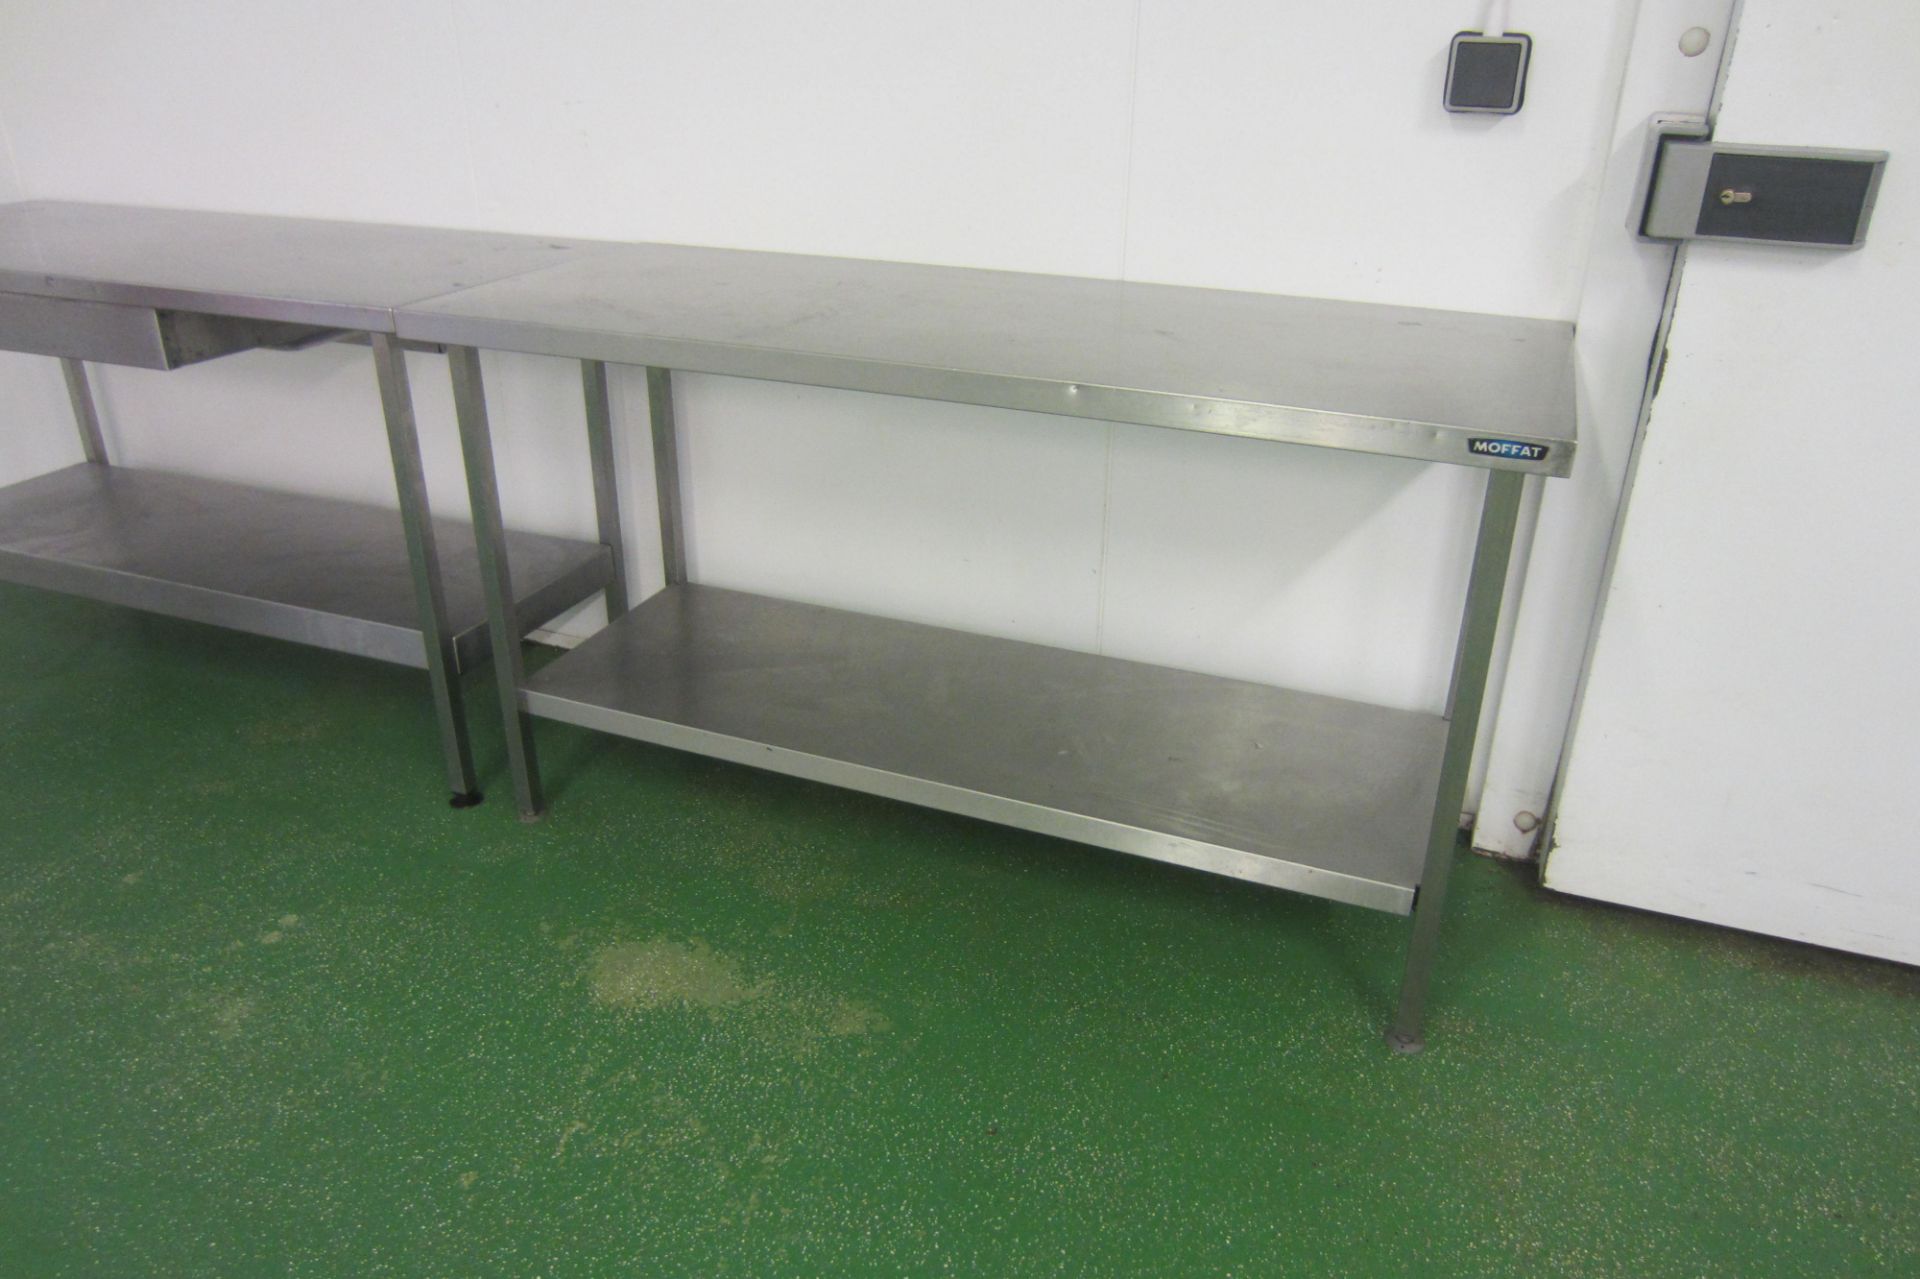 5 x Stainless Steel Prep/Work Tables with Shelf Under. Size 3 x 180cm x 65cm, 2 x 150cm x 60cm - Bild 4 aus 5